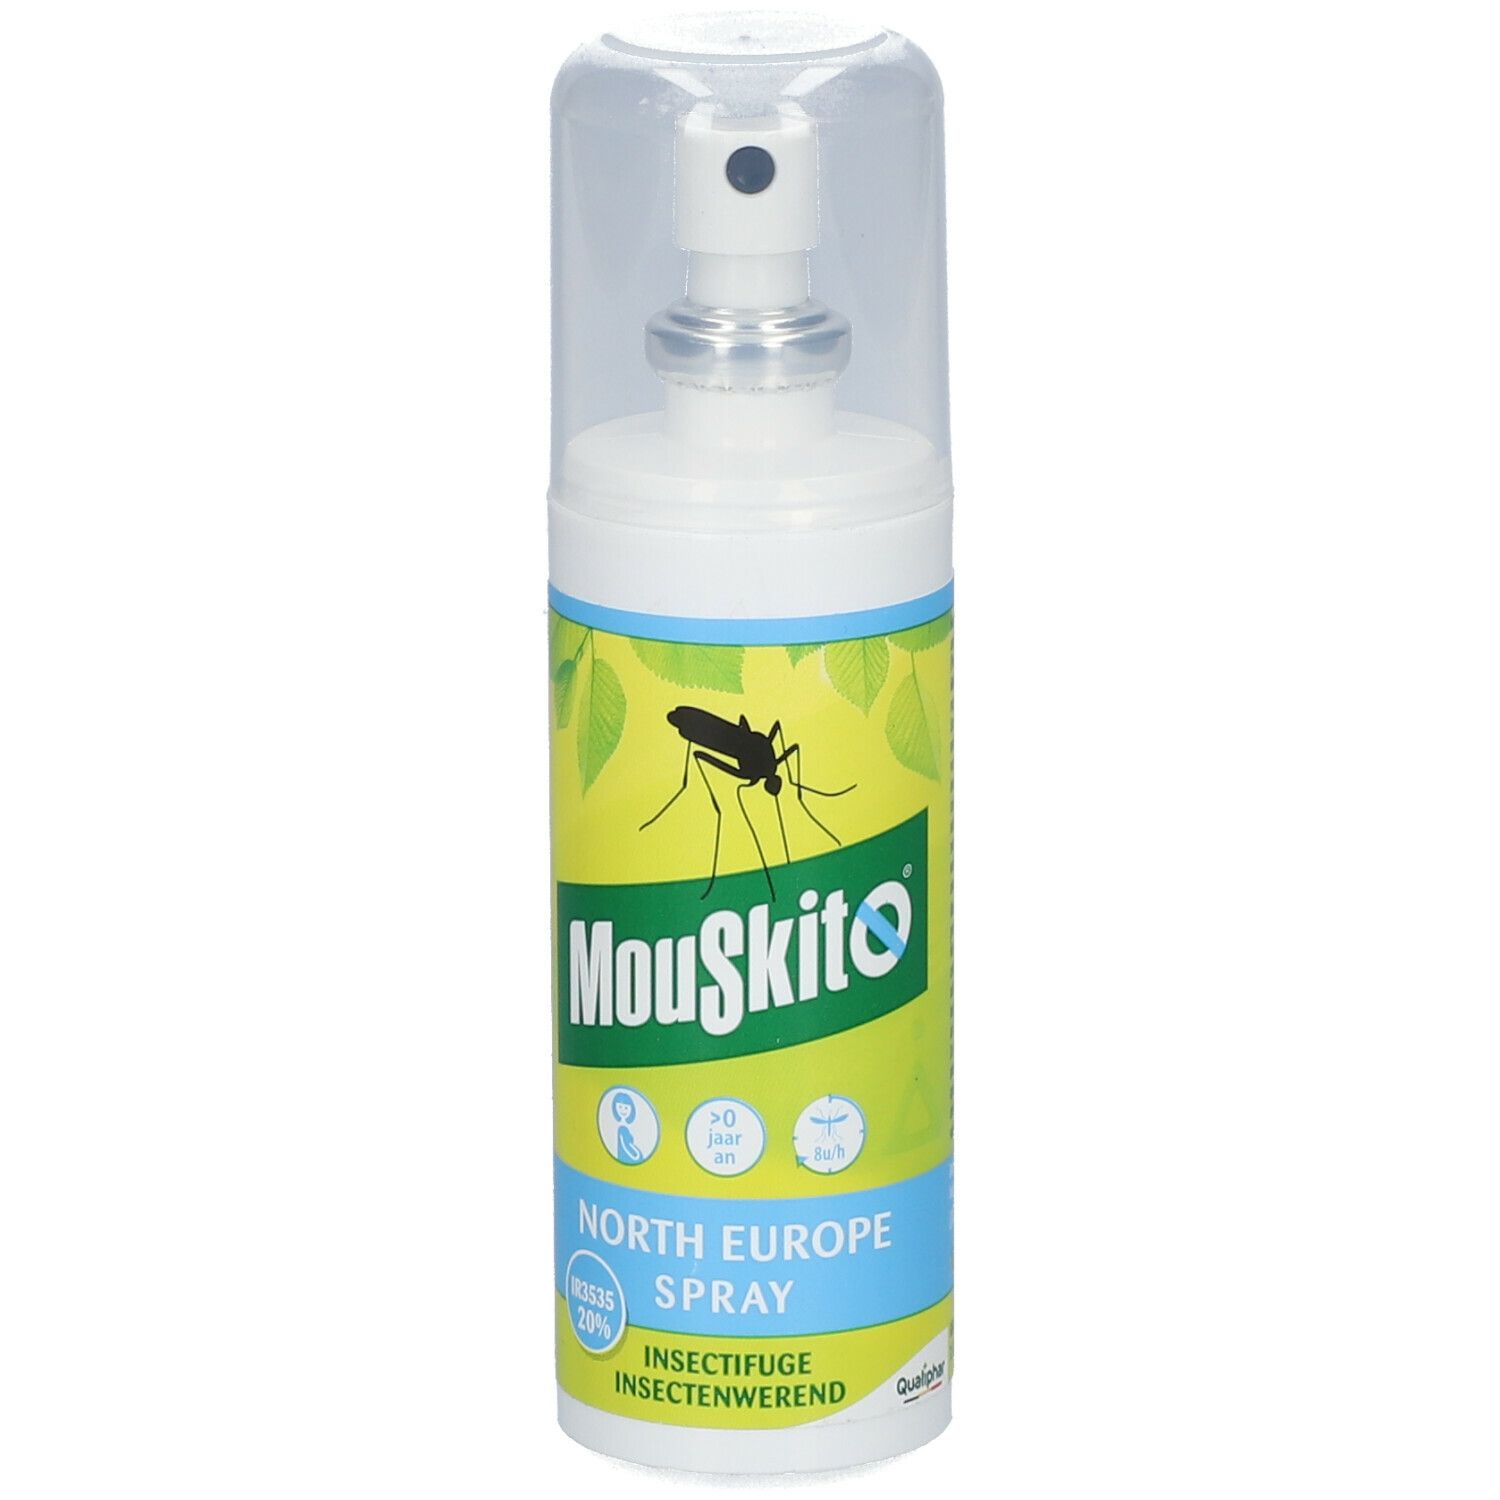 Mouskito® North Europe Spray 20% Ir3535